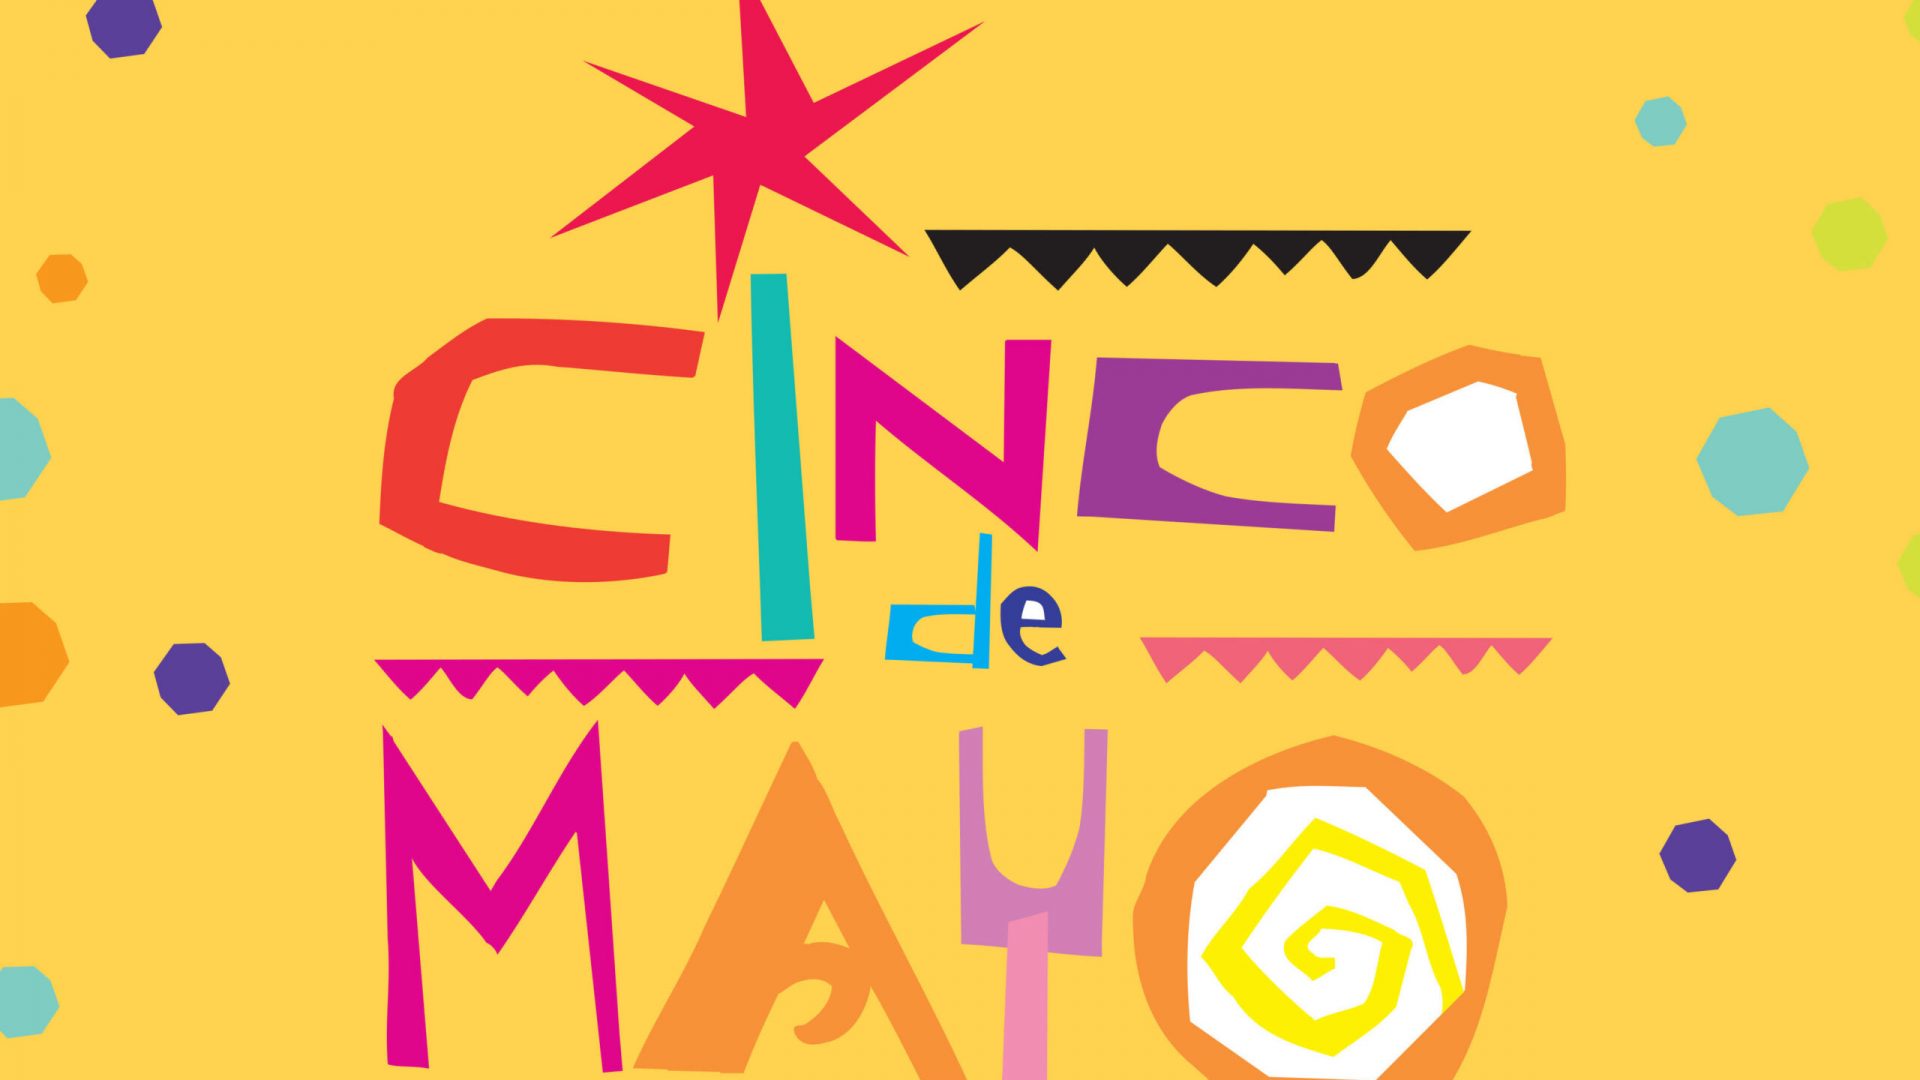 Cinco de Mayo art design by UNO Branding.